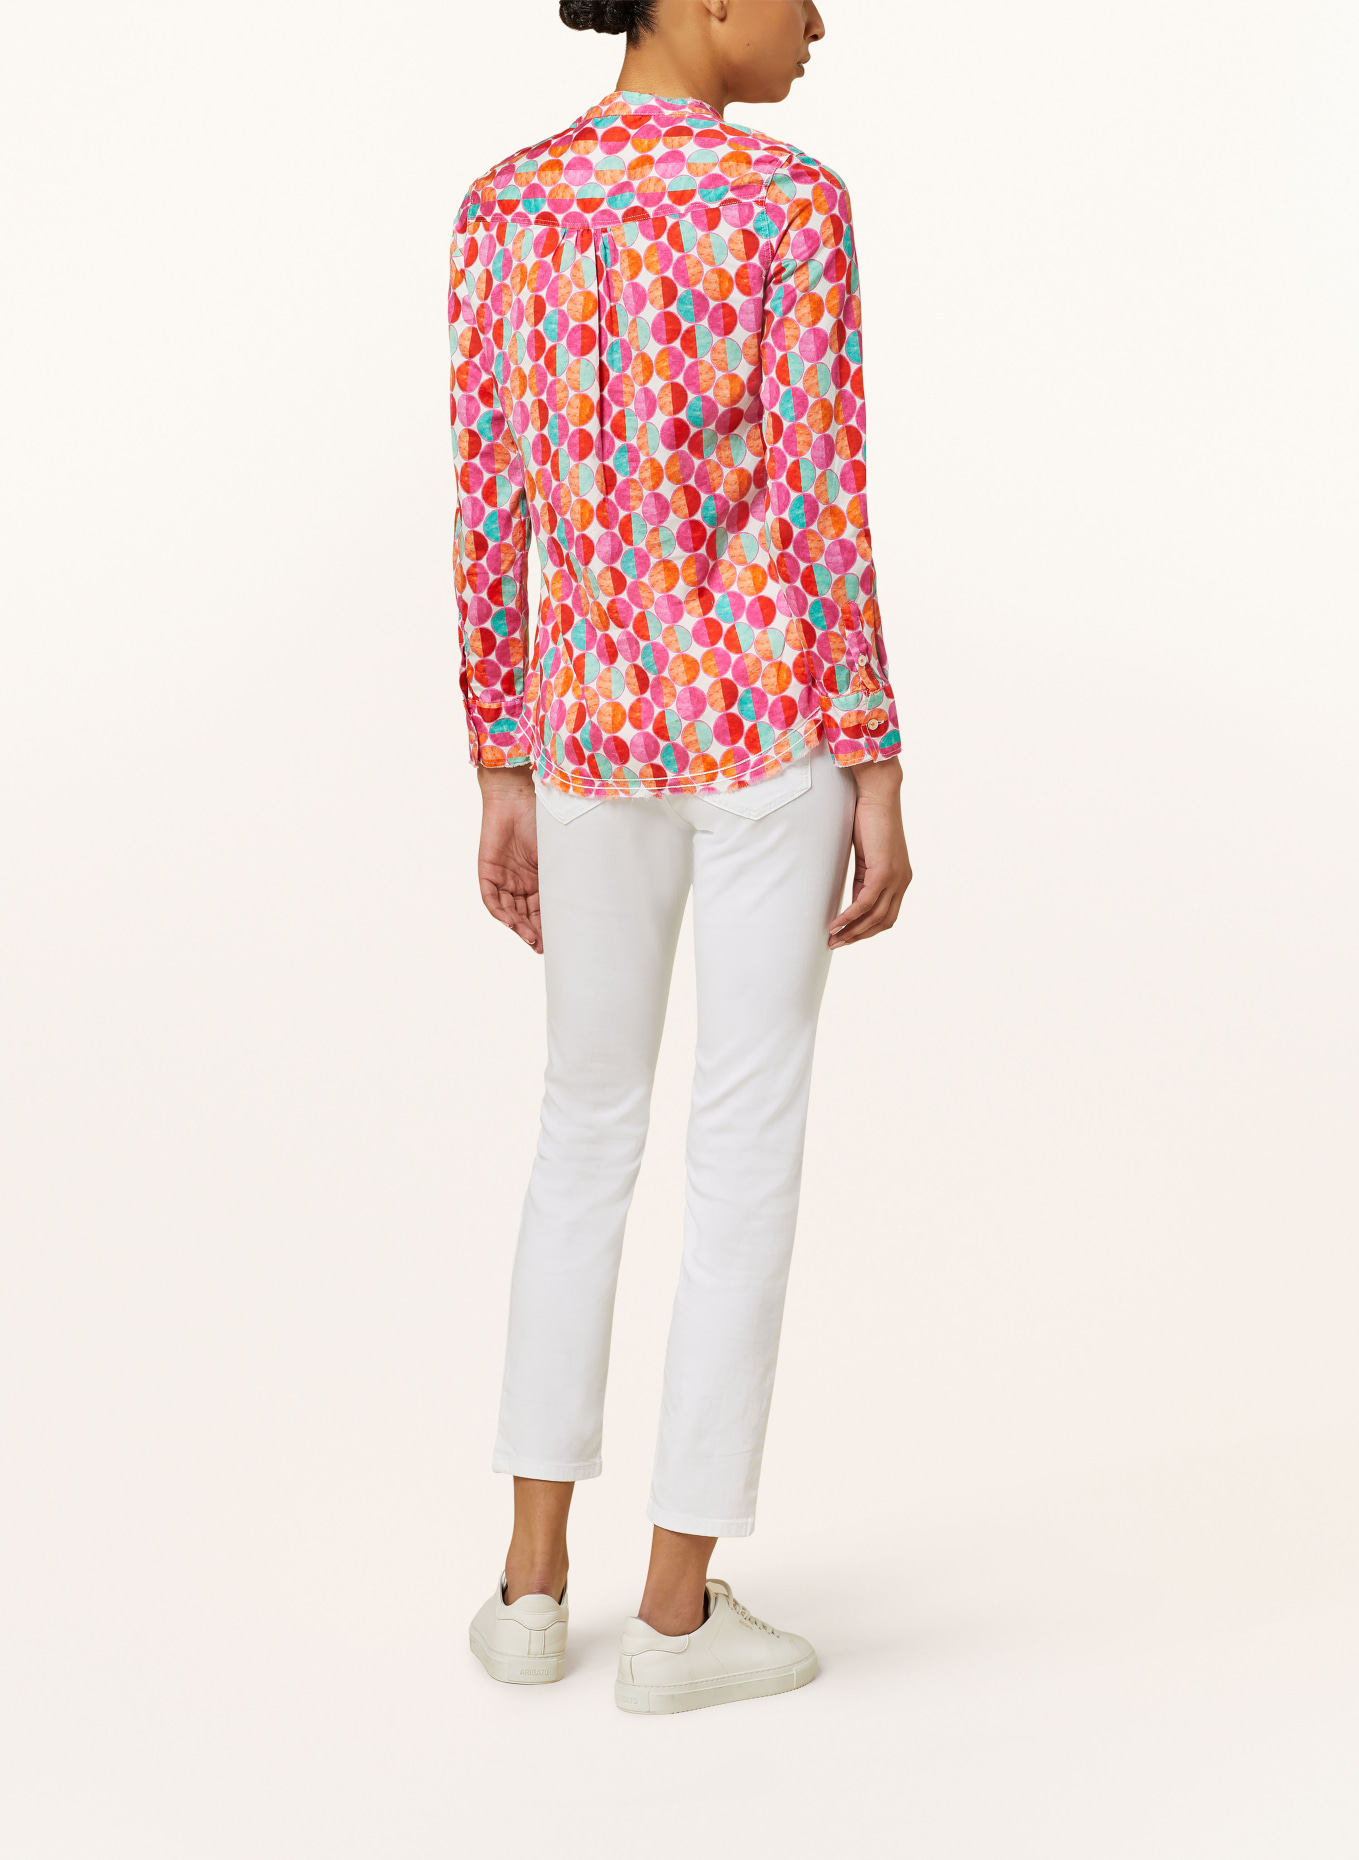 Emily VAN DEN BERGH Shirt blouse, Color: PINK/ ORANGE/ RED (Image 3)